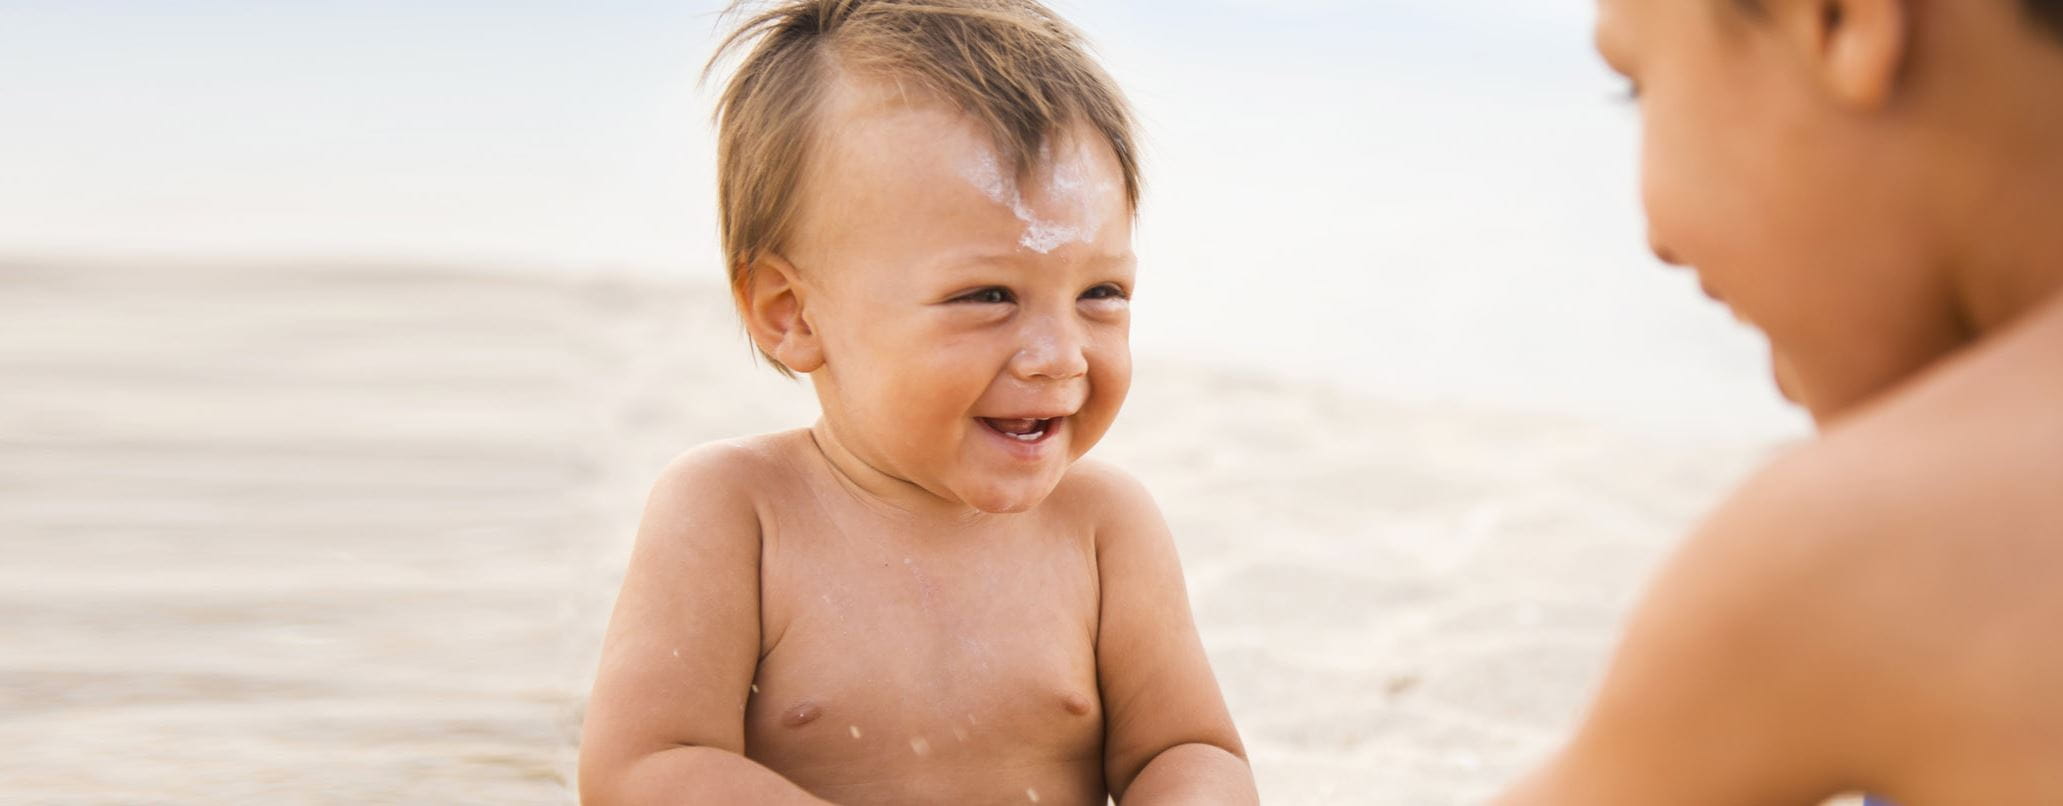 Sonnencreme fürs Baby: Welche ist die richtige?